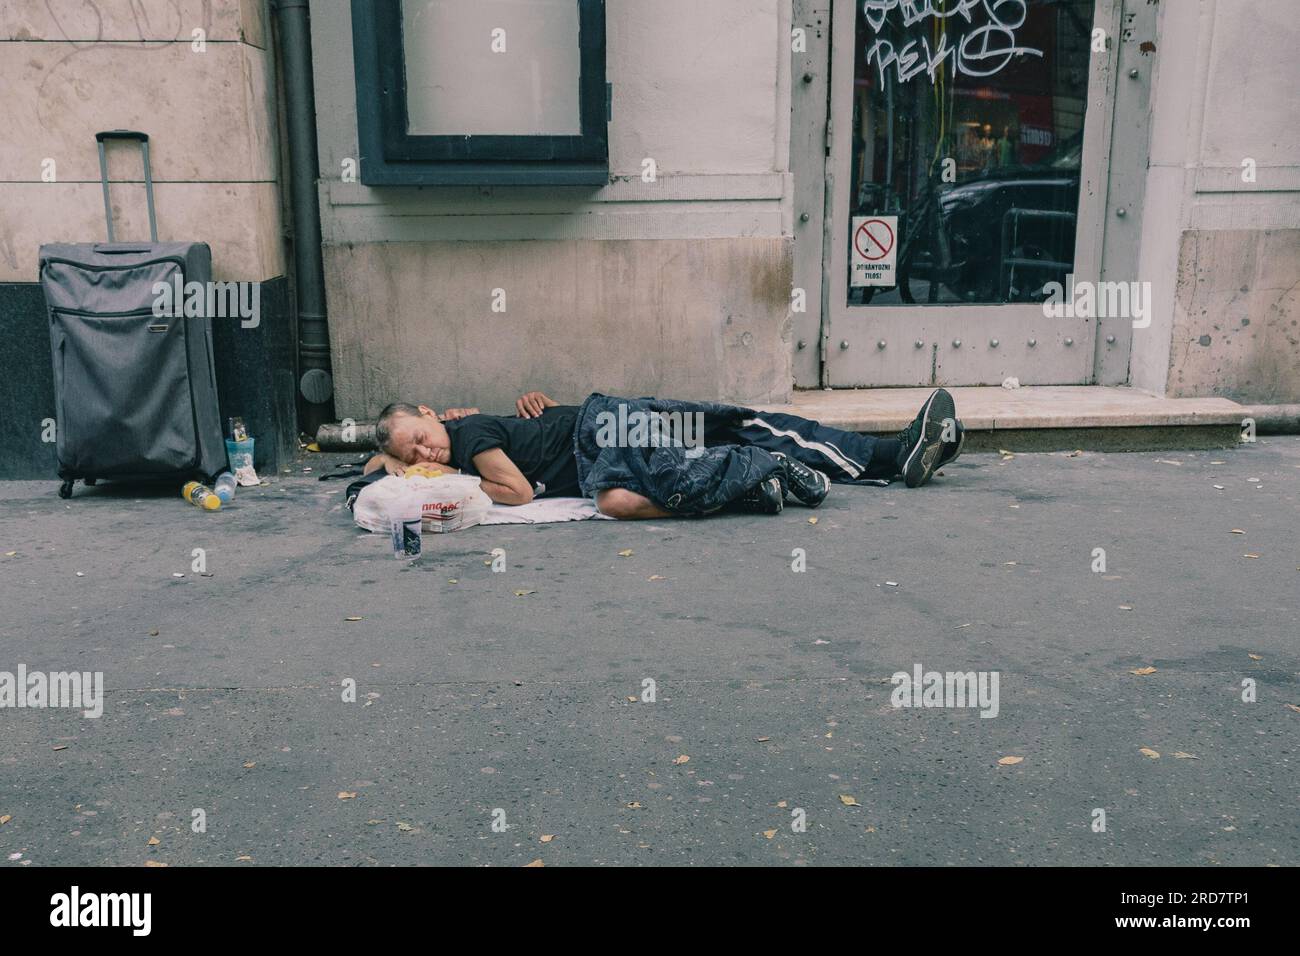 Zwei Obdachlose schlafen tagsüber auf der Straße. In Ungarn, insbesondere in Budapest, herrscht anhaltende Besorgnis über Obdachlosigkeit. Aufgrund der hohen Inflation ist die Zahl der Menschen, die auf den Straßen leben, in der Stadt gestiegen. Faktoren wie Armut, Arbeitslosigkeit, psychische Gesundheit und Mangel an bezahlbarem Wohnraum tragen zu dem Problem bei. Die ungarische Regierung und die lokalen Behörden haben verschiedene Maßnahmen zur Bekämpfung der Obdachlosigkeit ergriffen. Dazu gehören die Bereitstellung von Notunterkünften, soziale Dienste und Programme zur Wiedereingliederung in die Gesellschaft. Nicht- Stockfoto